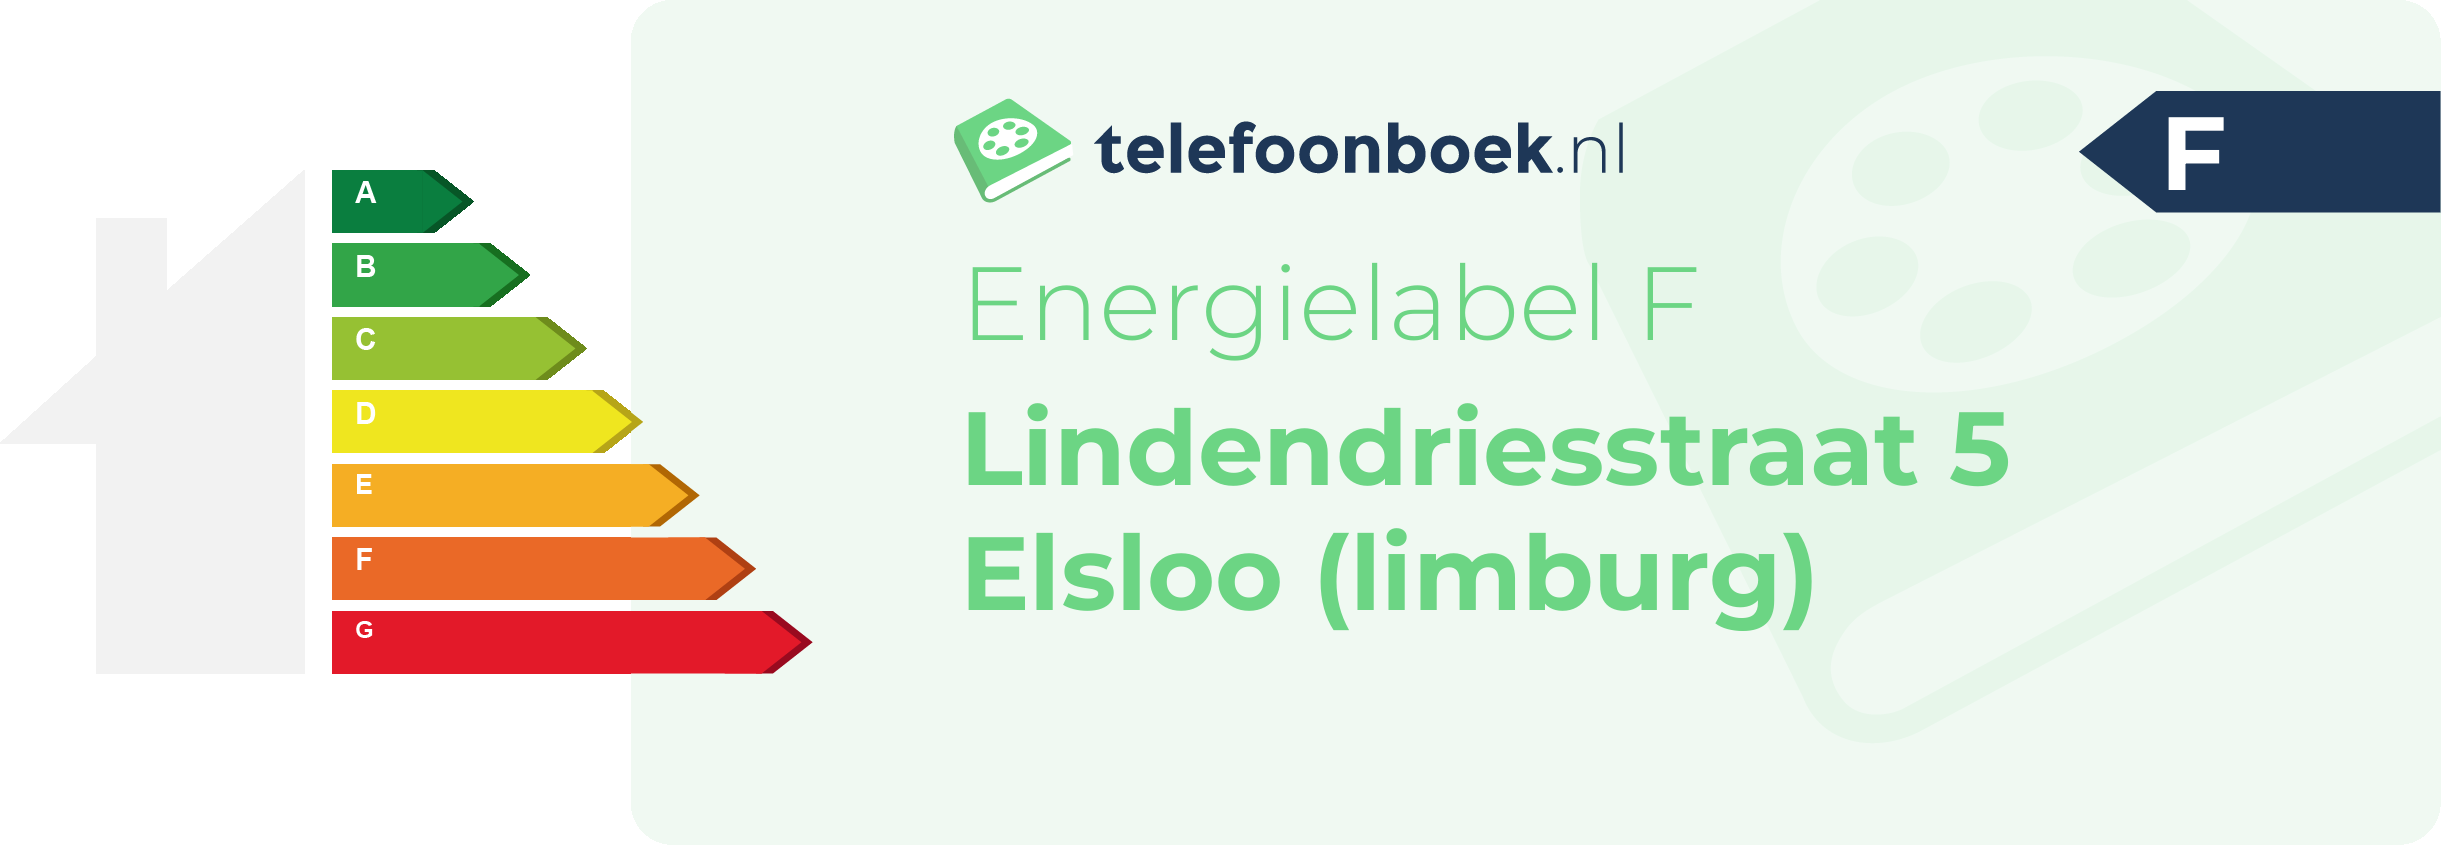 Energielabel Lindendriesstraat 5 Elsloo (Limburg)